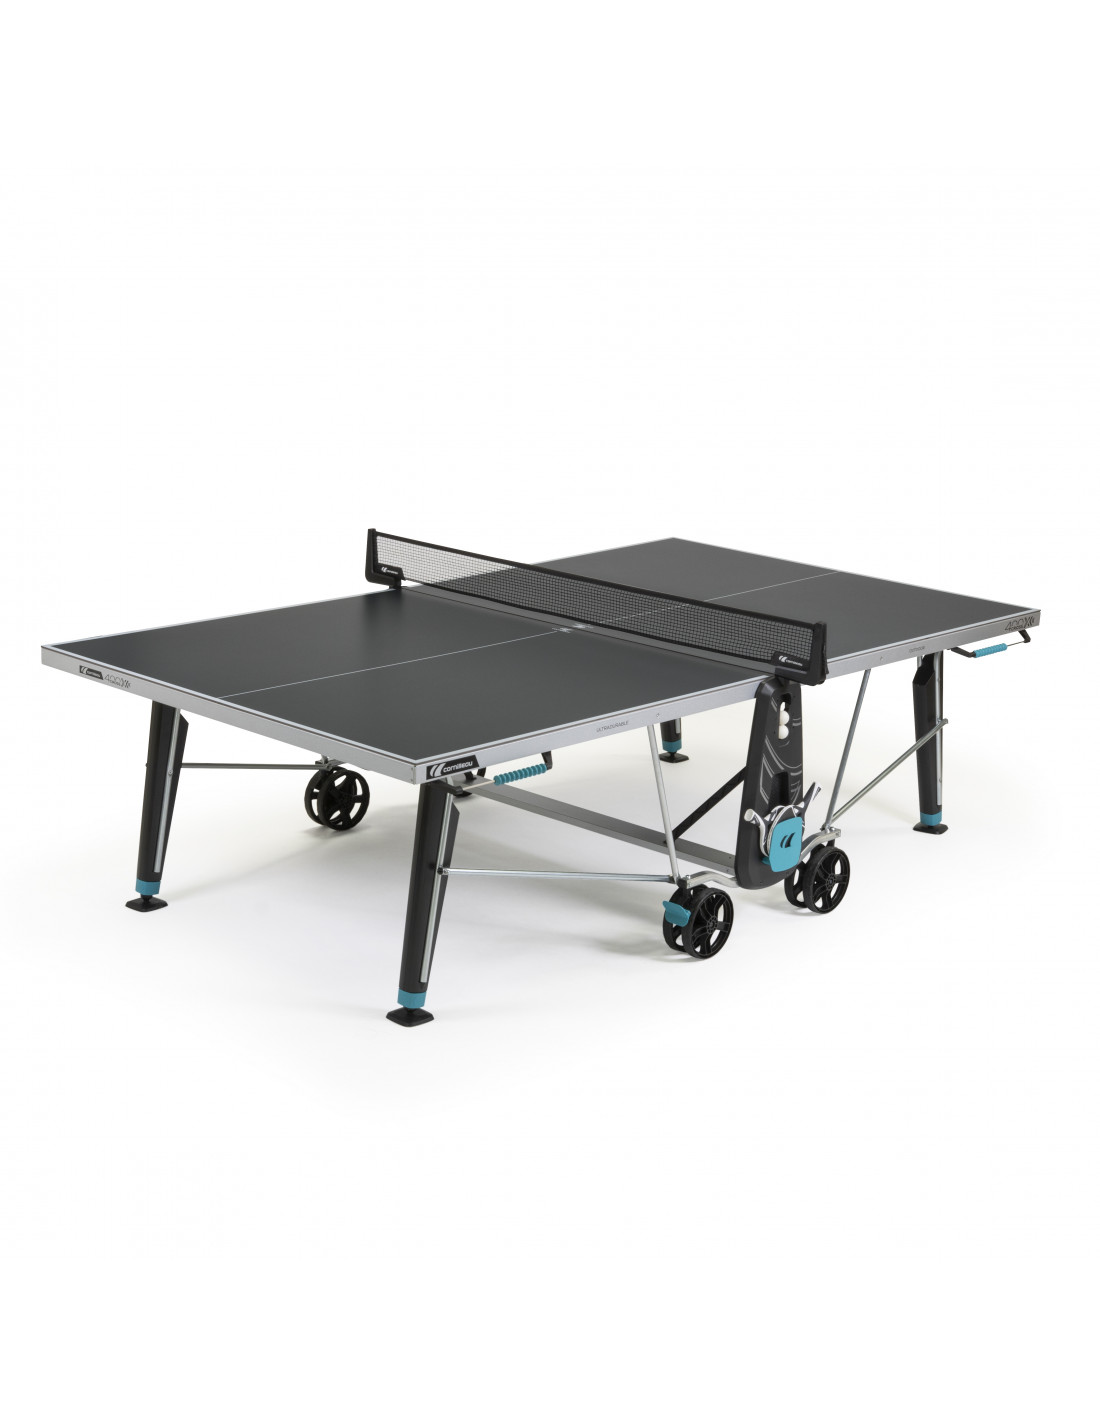 Housse pour table ping pong Premium : Commandez sur Techni-Contact -  Protection table ping pong